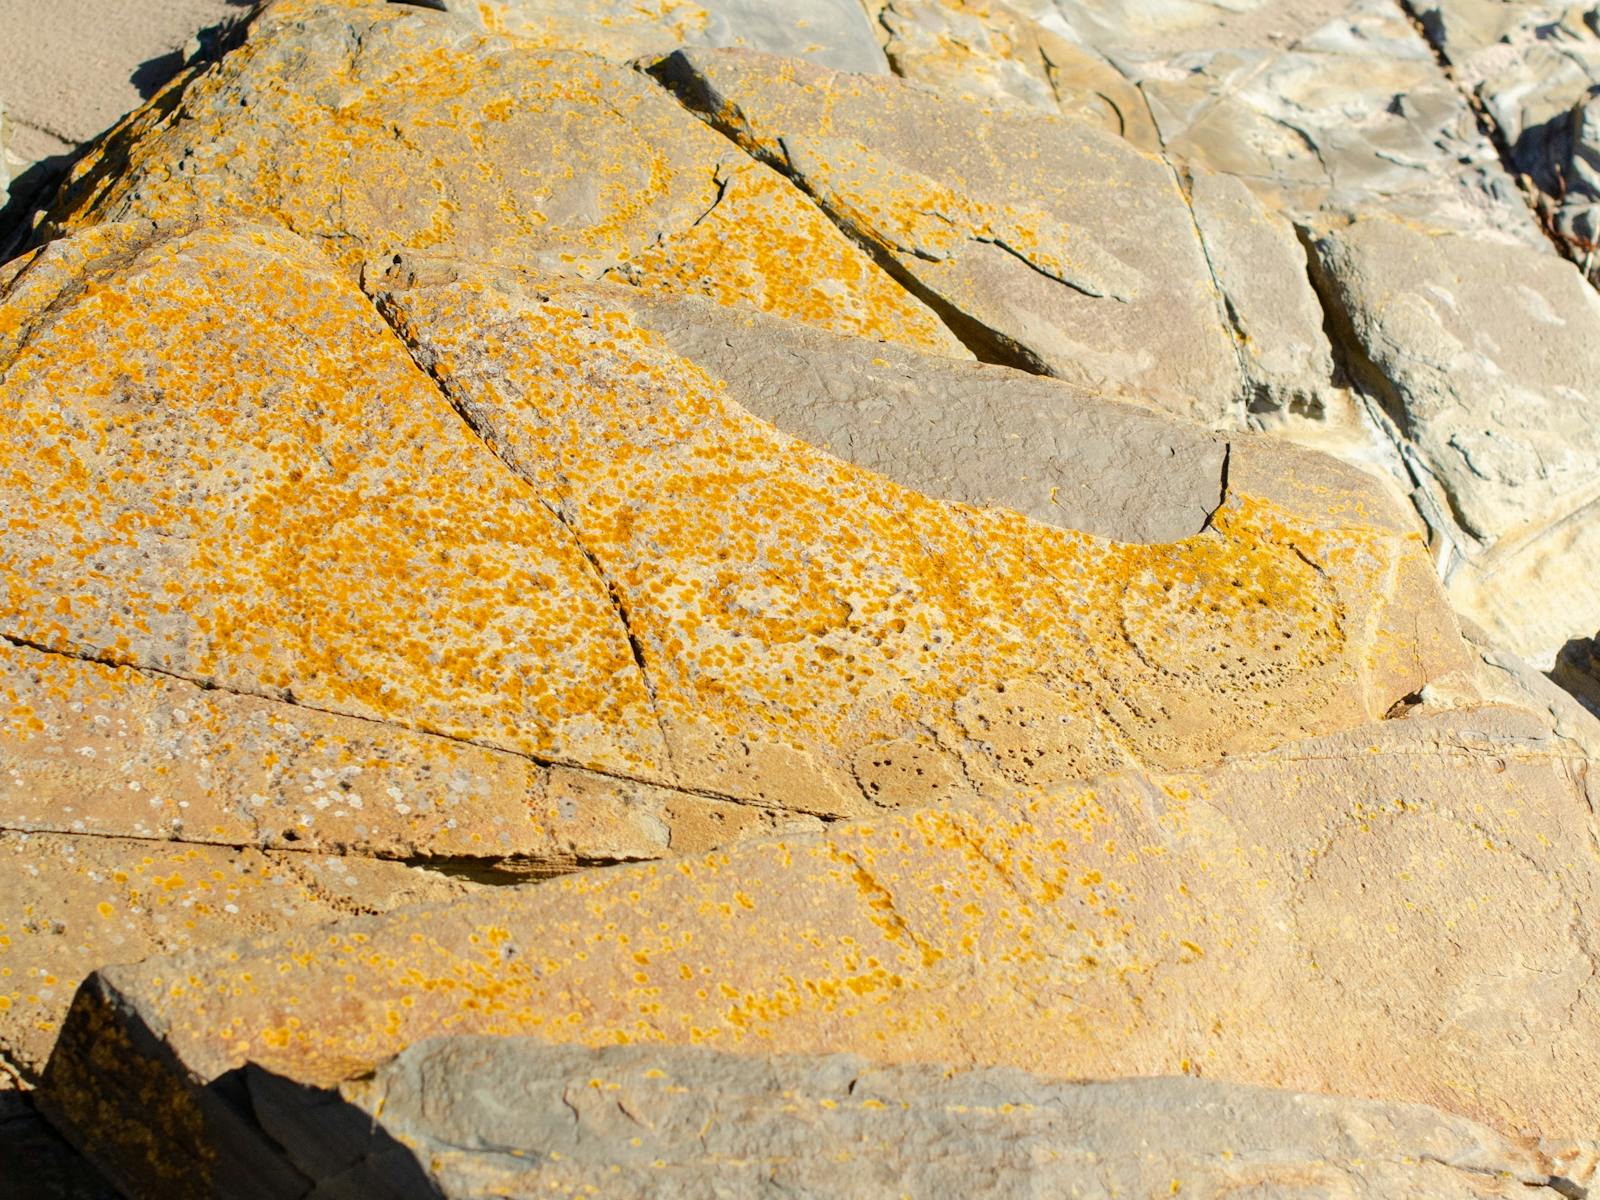 Subtle petroglyphs on orange and grey rock at ground level